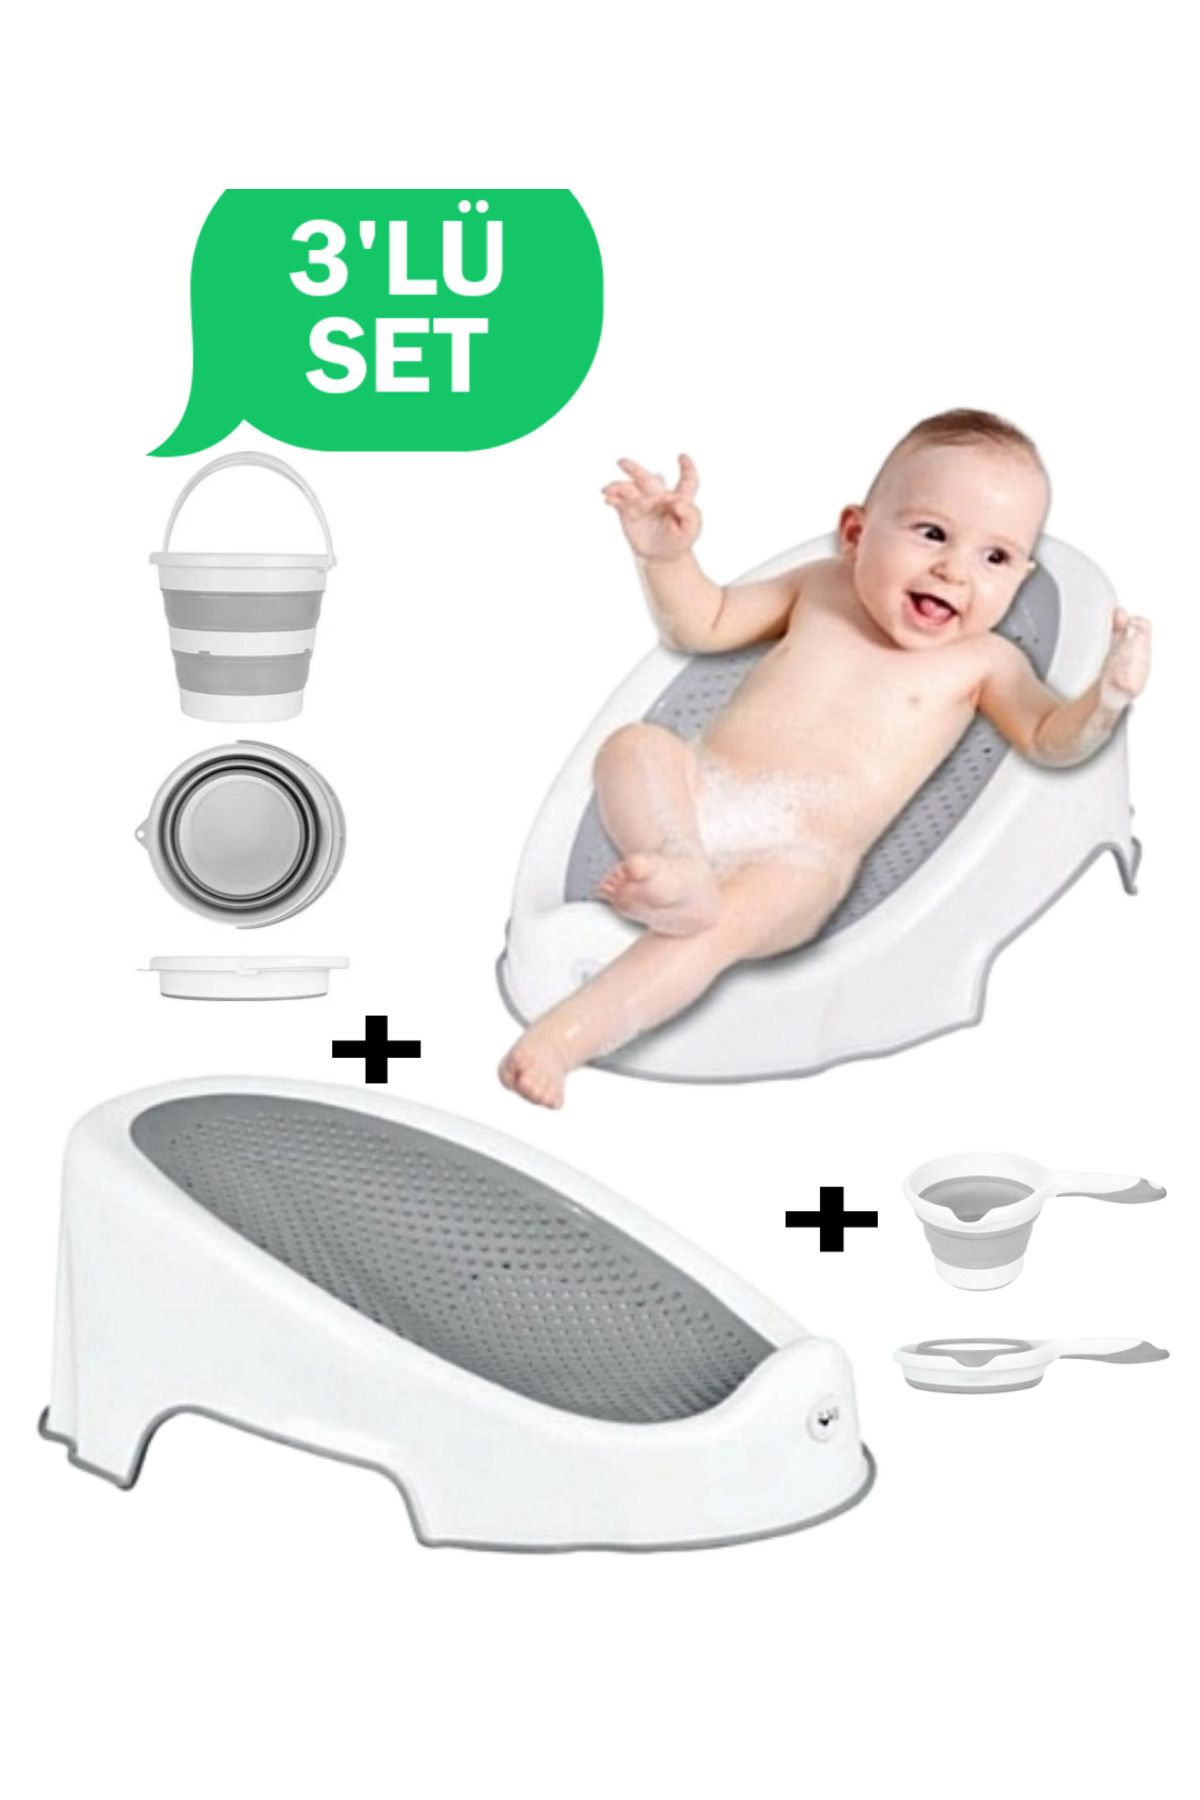 Gönül İşlerim 3'lü SET Soft Bebek Banyo Küveti & Katlanır Su Kovası & Koçero (Maşrapa) Set